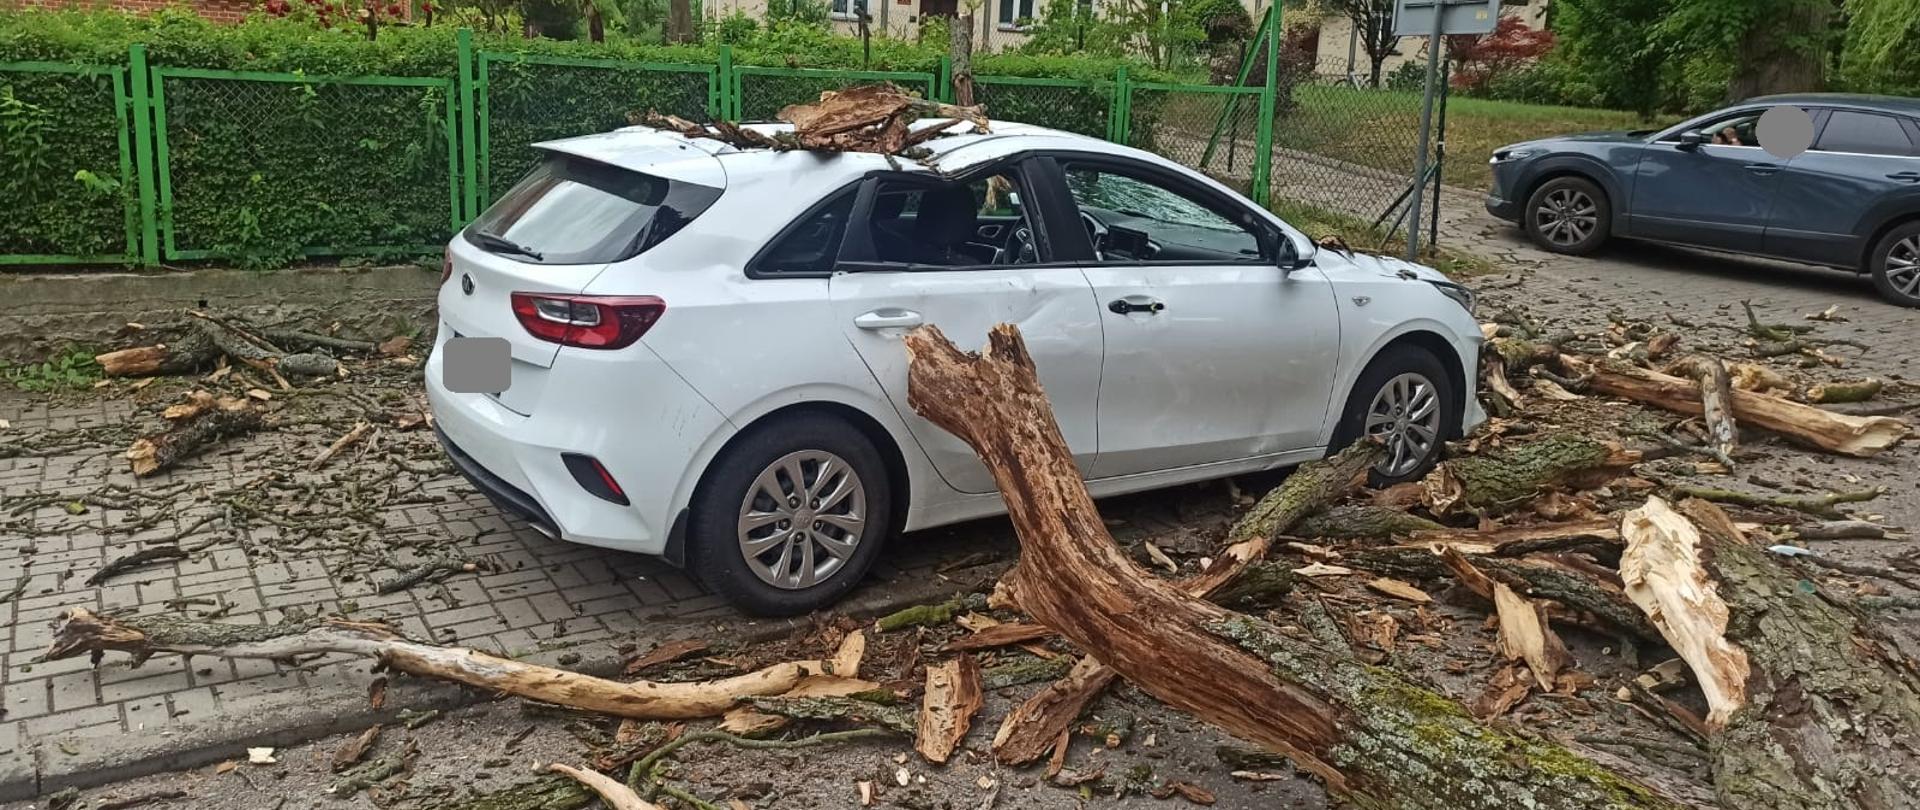 Na chodniku zaparkowane białe auto osobowe na które spadł suchy konar drzewa. Na samochodzie i drodze fragmenty konara.